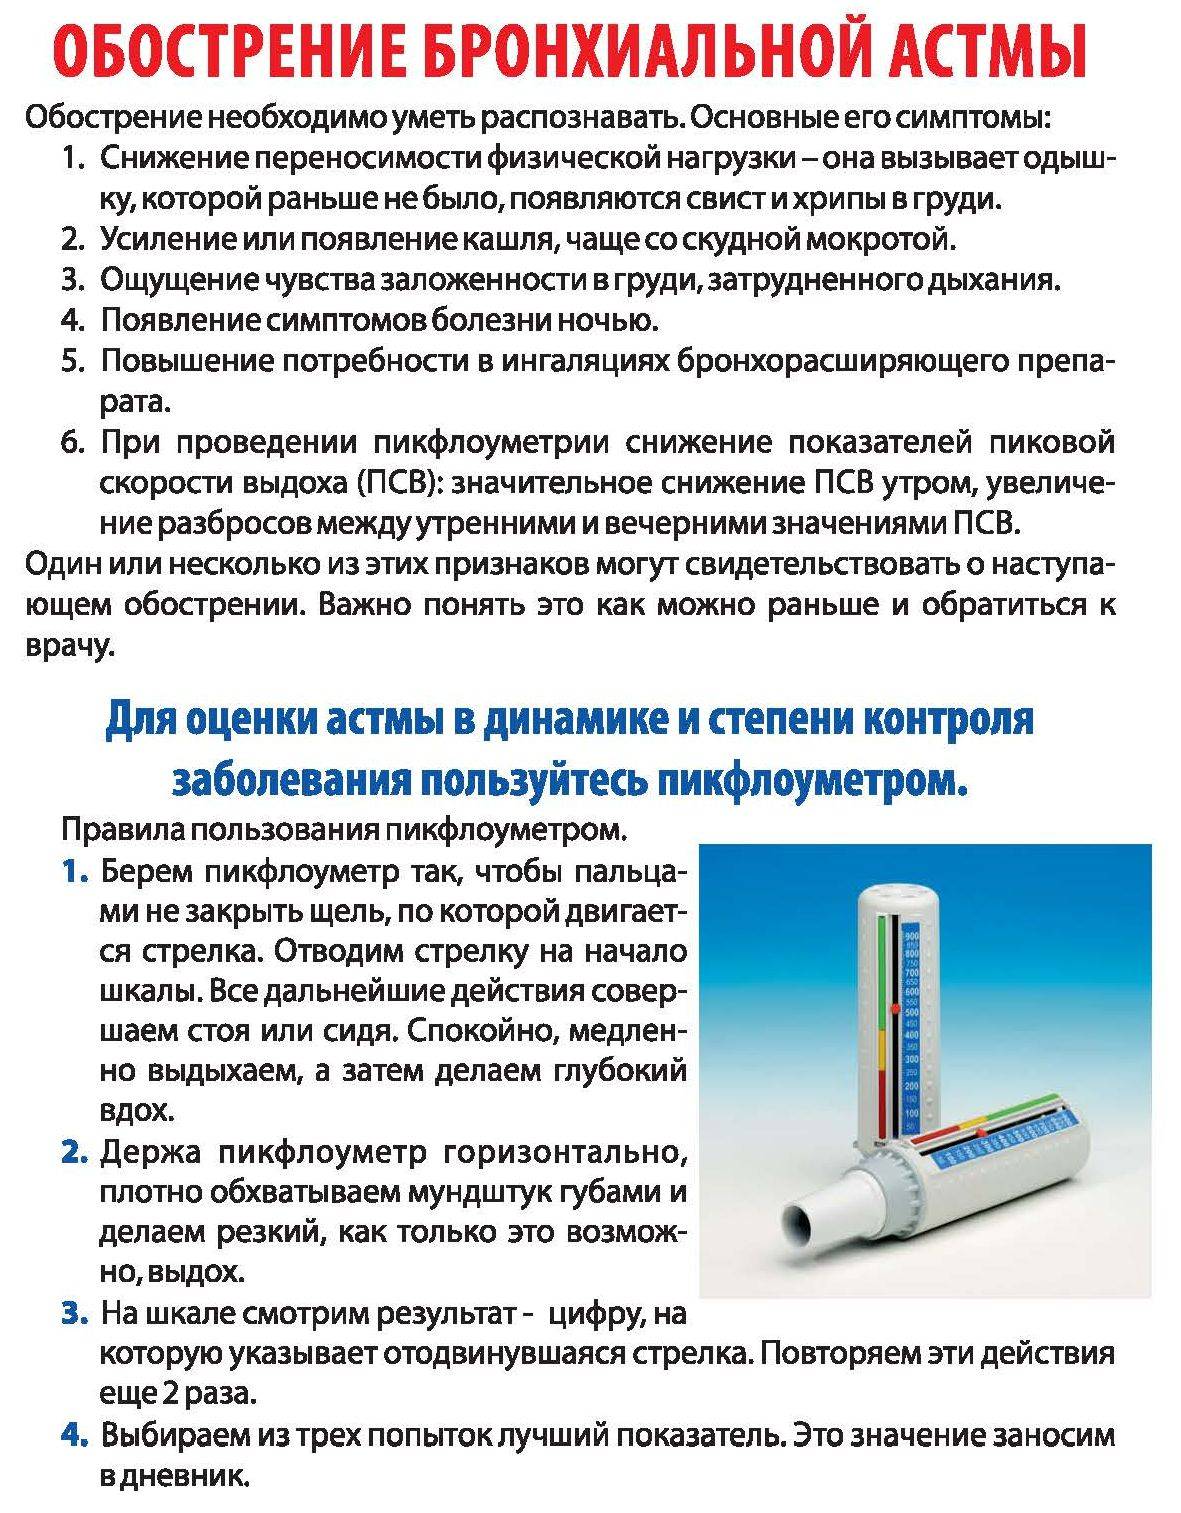 Какие назначают антибиотики при бронхиальной астме pulmono.ru
какие назначают антибиотики при бронхиальной астме